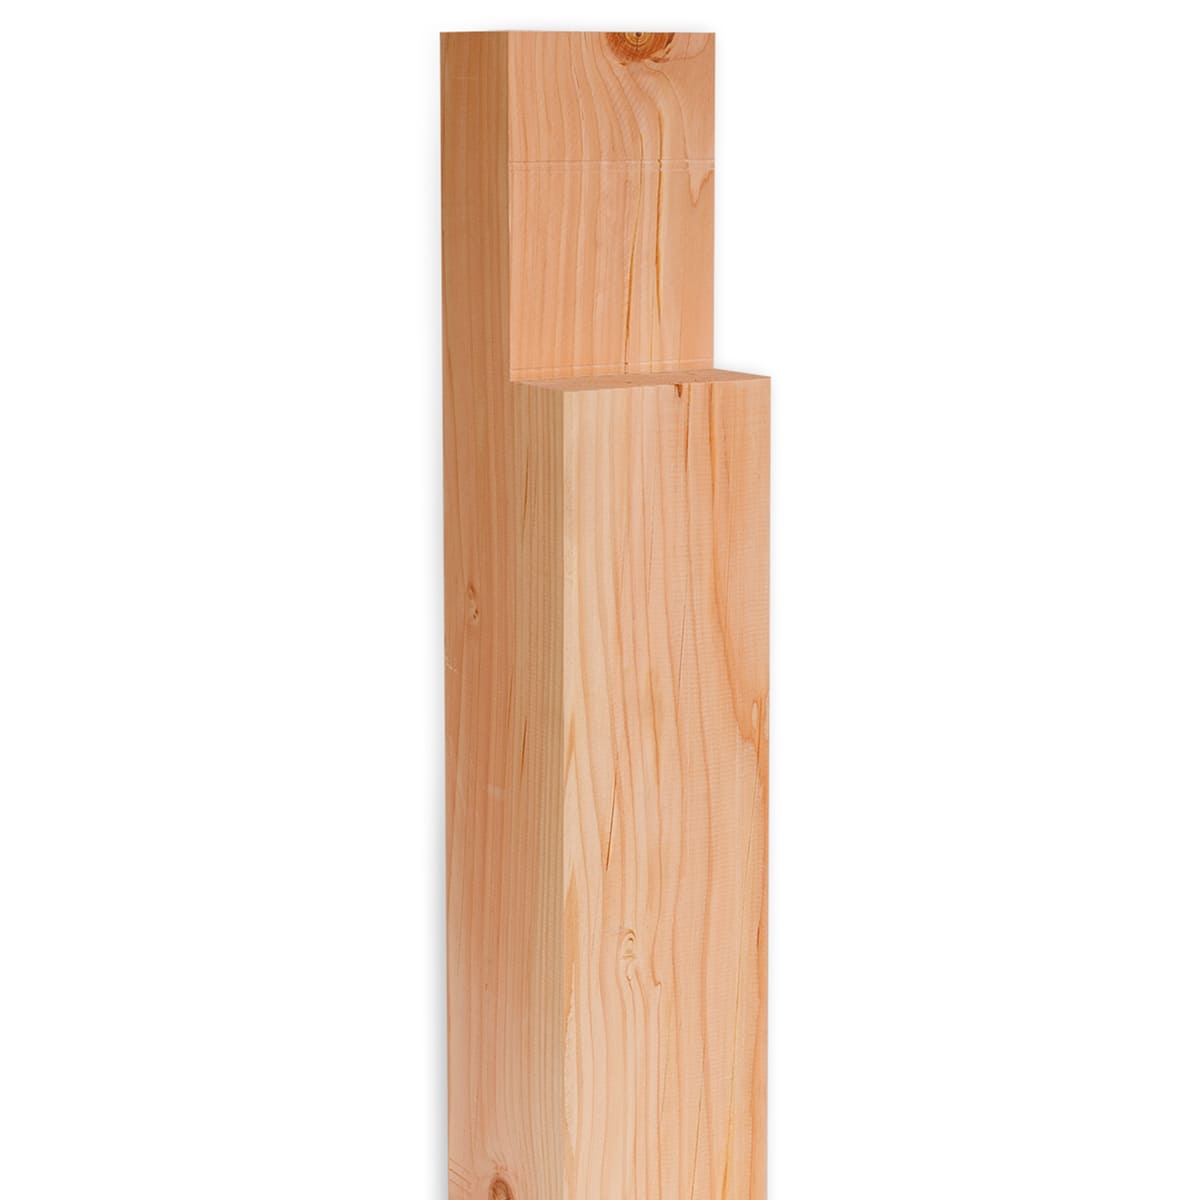 Douglas hout staander brede verbinding